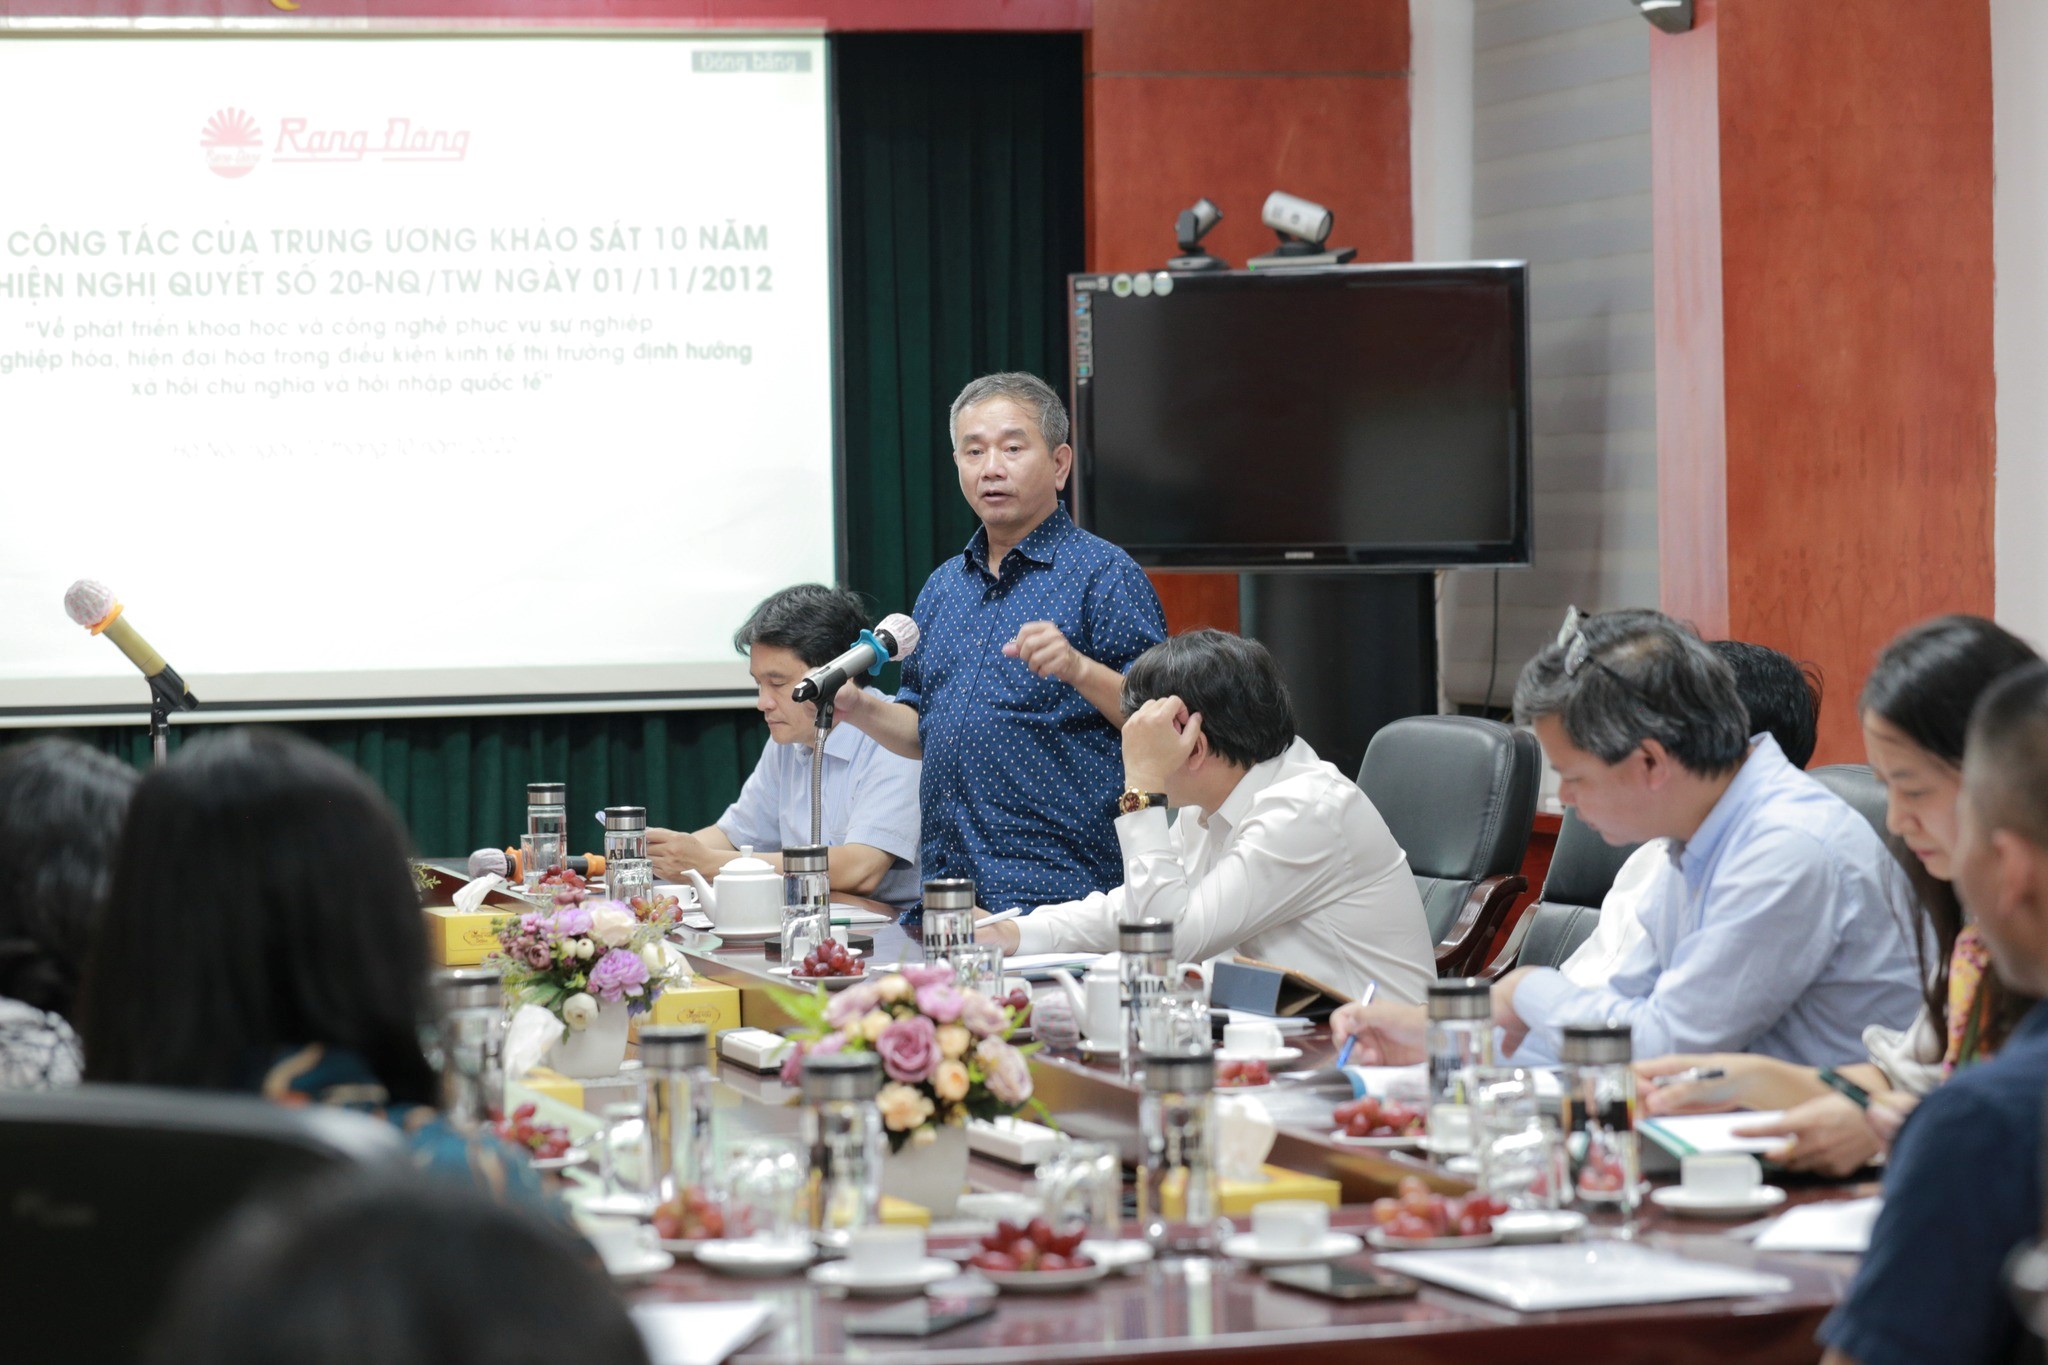 Đồng chí Phạm Hồng Tung, Viện trưởng Viện Việt Nam học và Khoa học phát triển, Đại học Quốc gia Hà Nội phát biểu tại buổi làm việc.